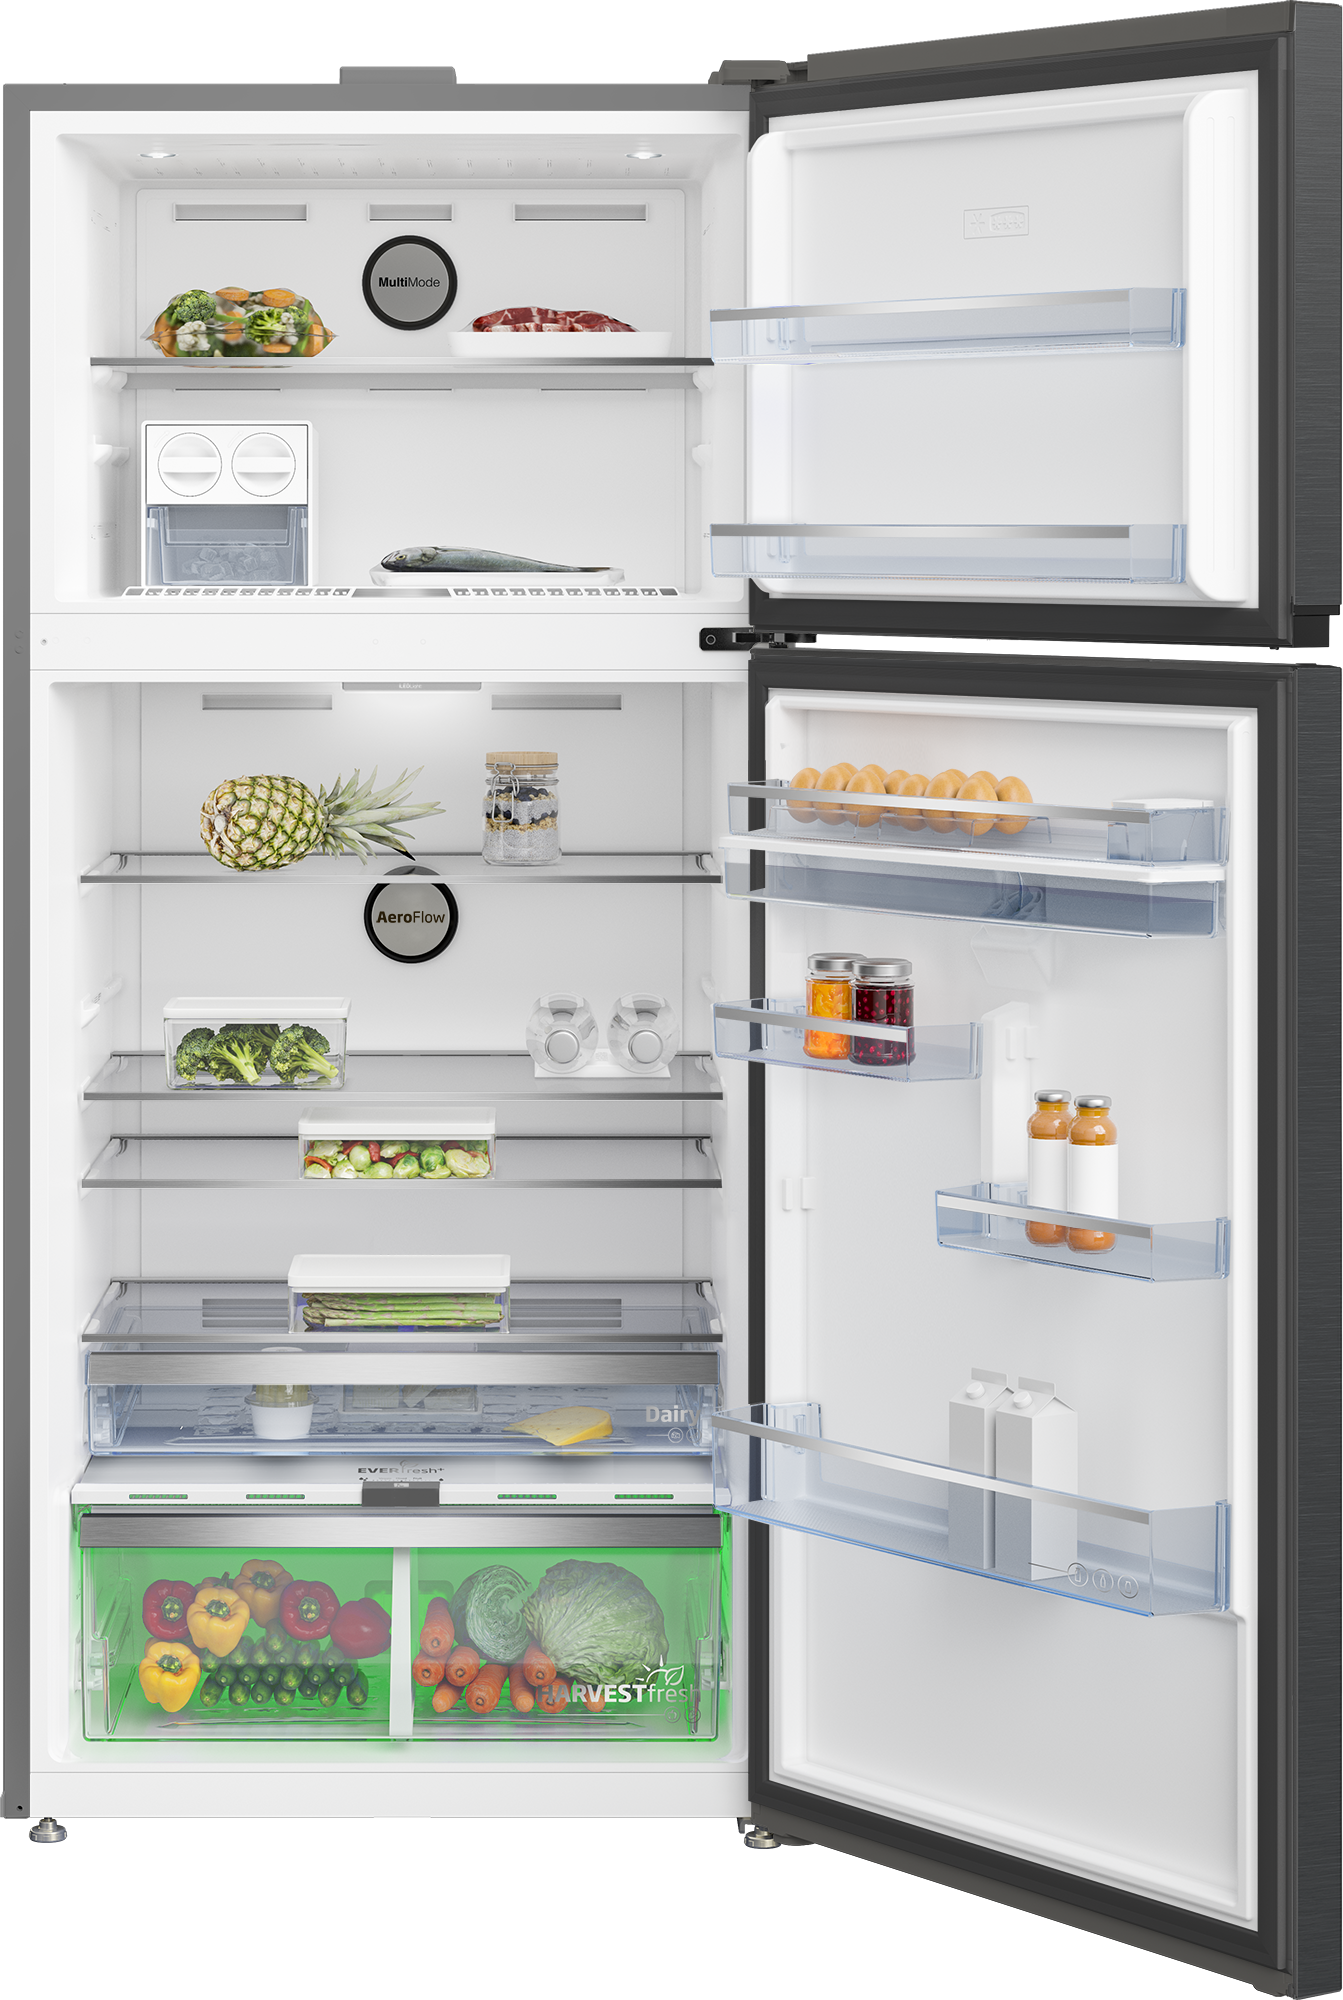 Réfrigérateur-congélateur (Double portes, 83.2 cm), RDNE700E40XP